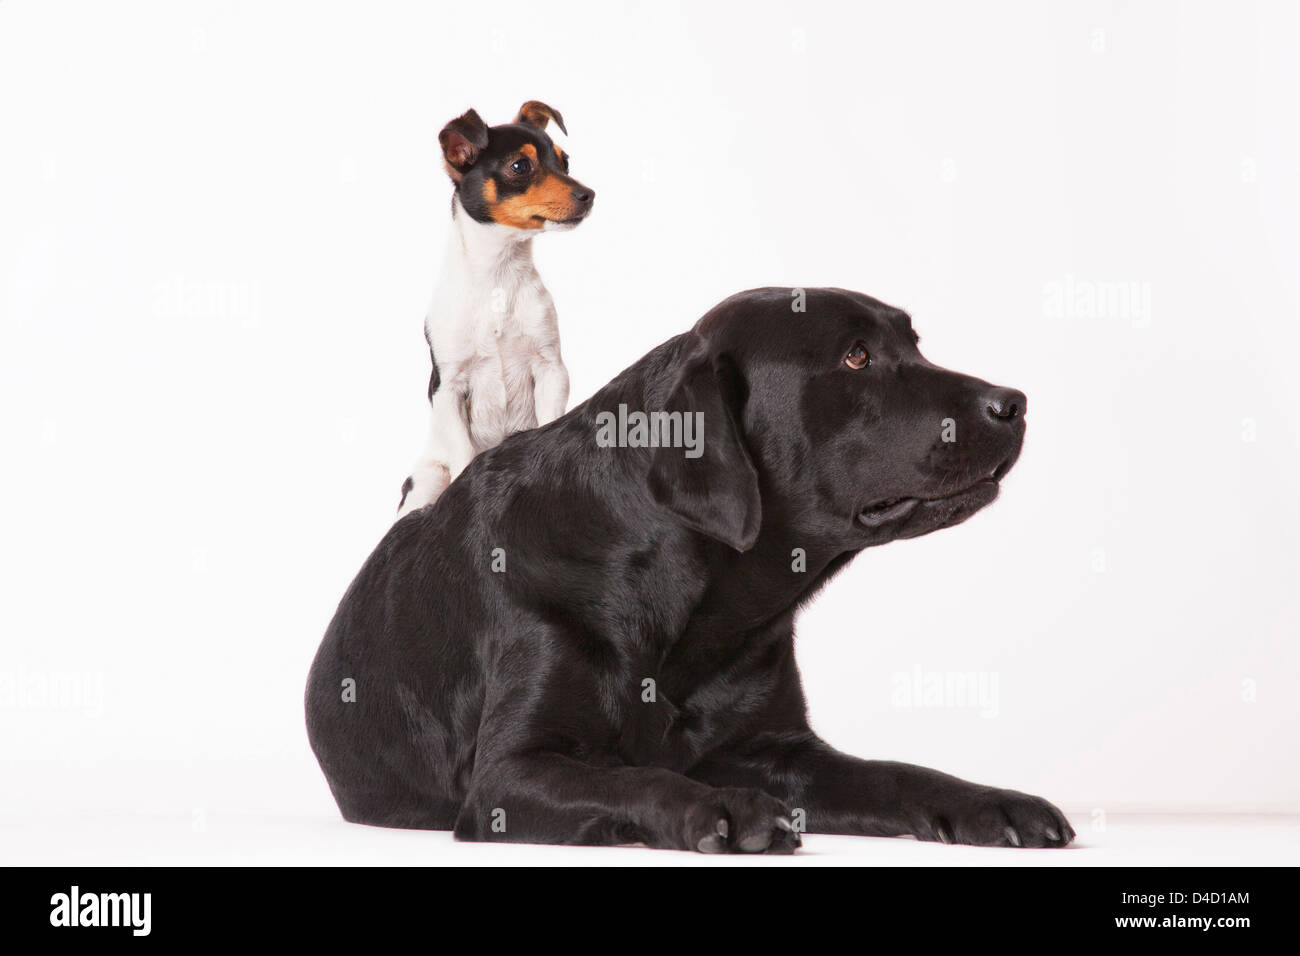 Little dog sitting on big dog Stock Photo